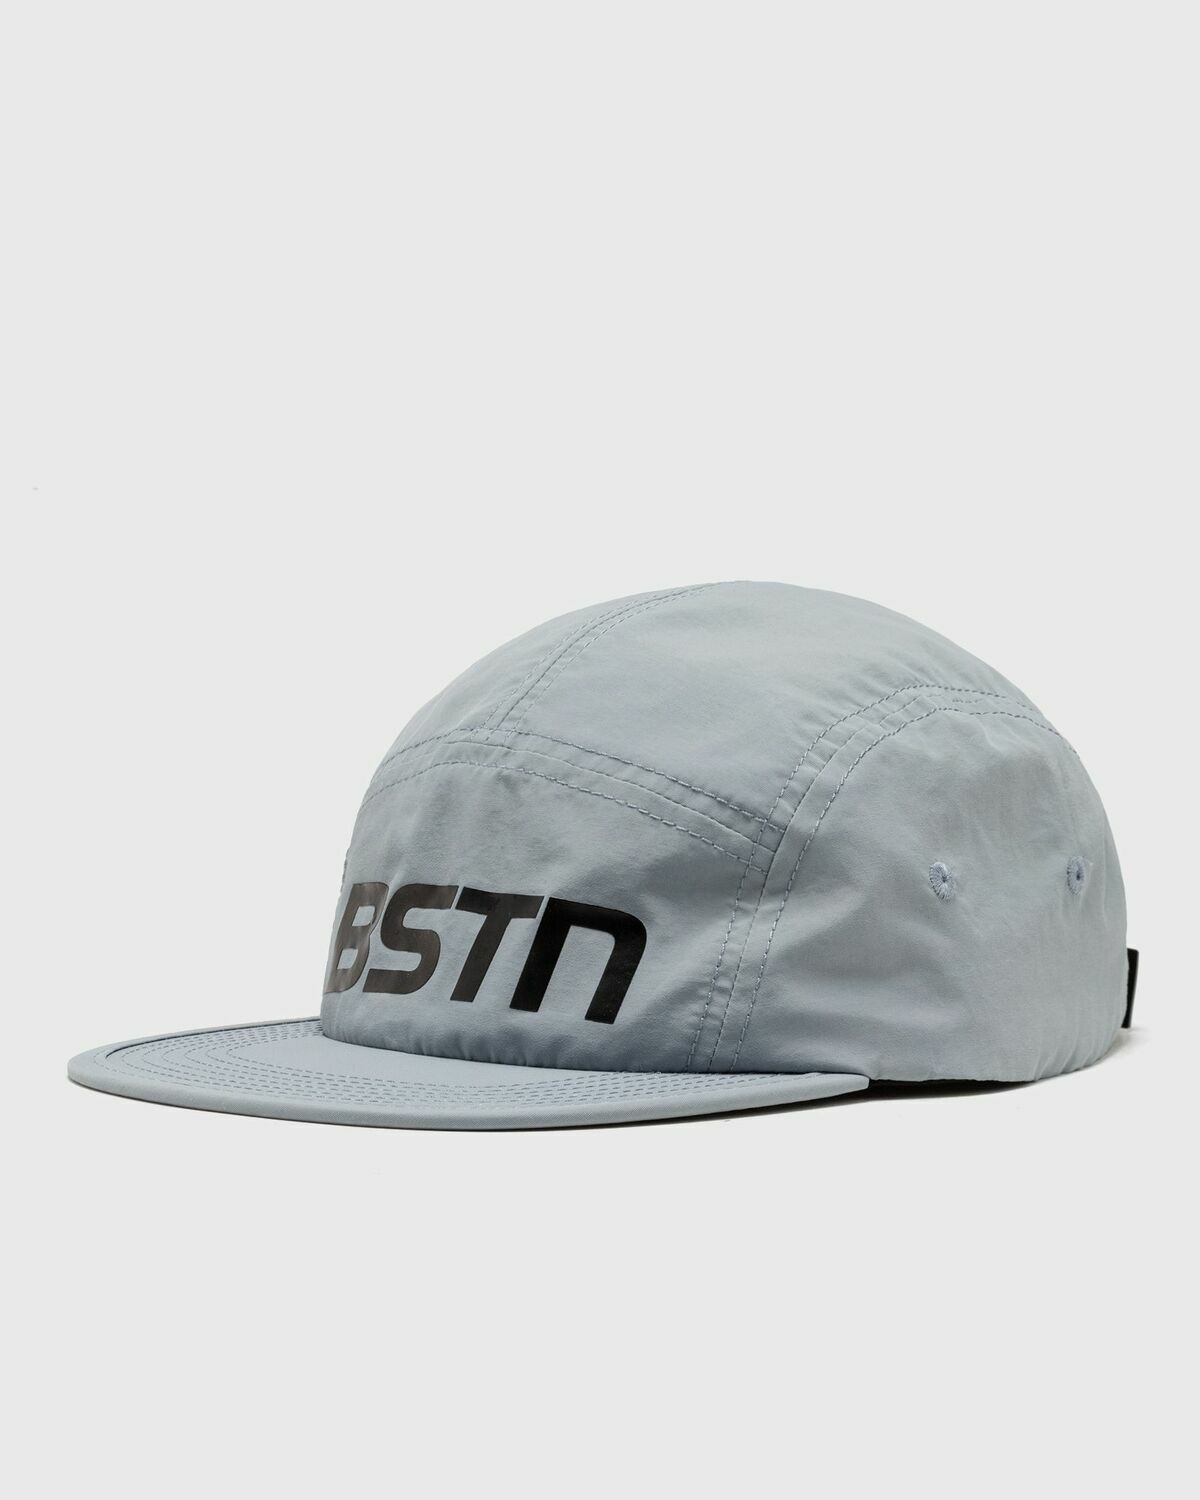 Bstn Brand Lightweight Cap Grey - Mens - Caps